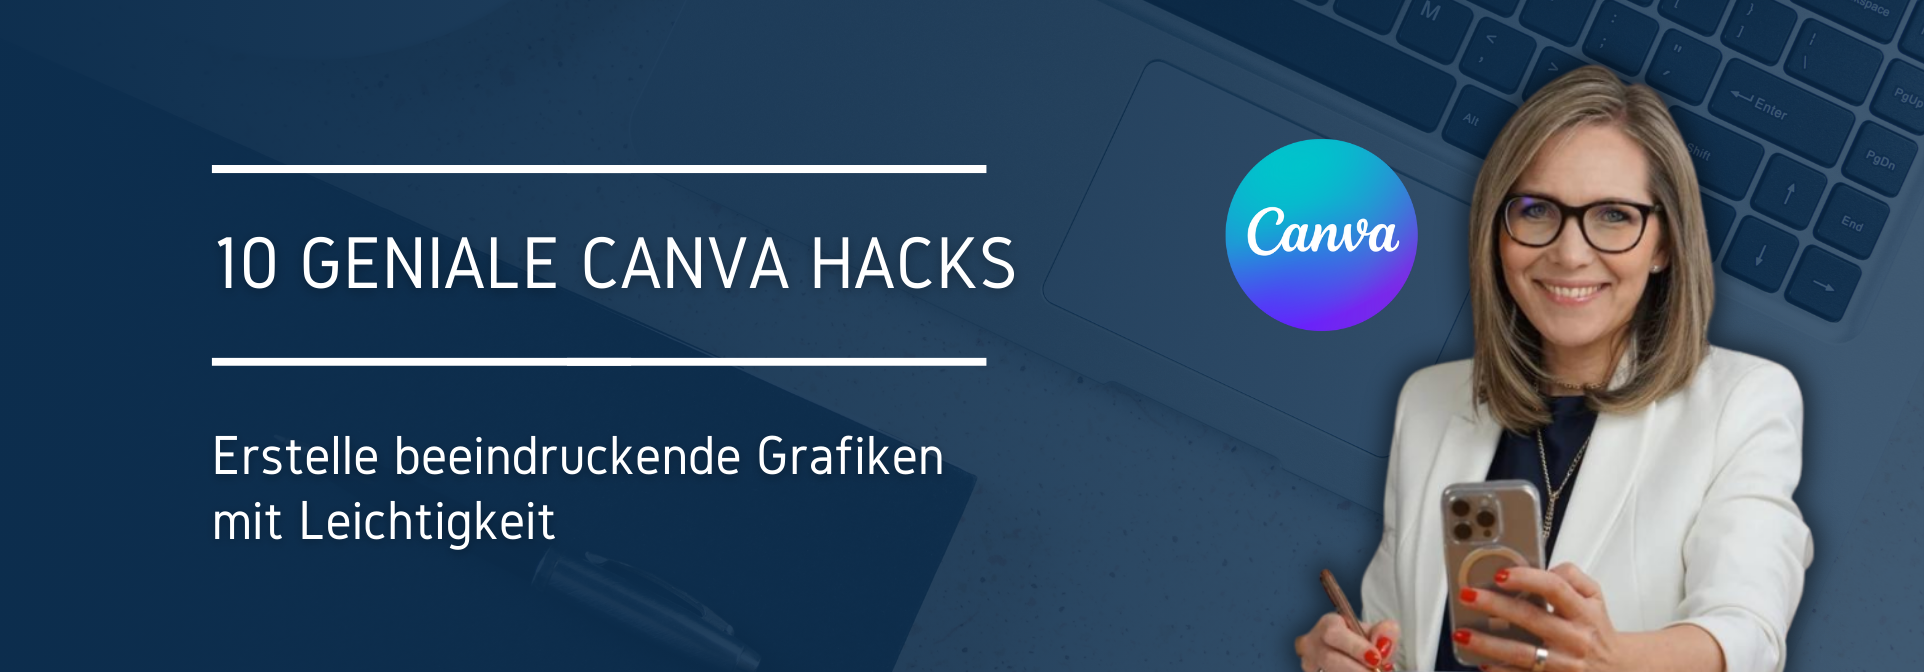 10 geniale Canva Hacks